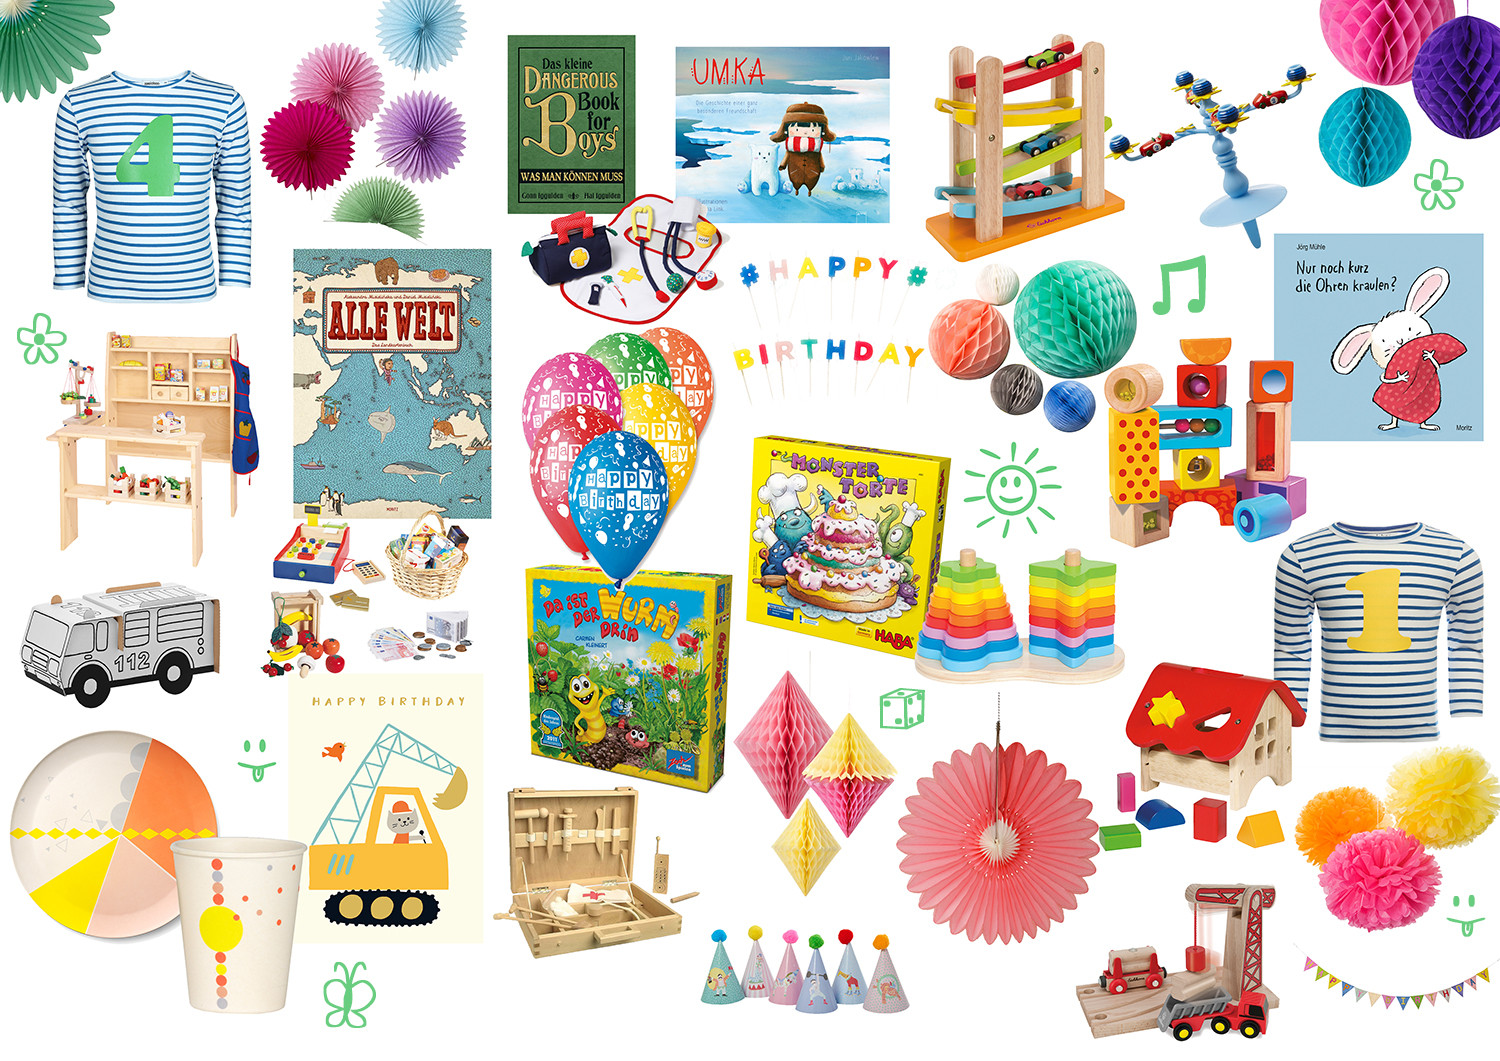 Persönliche Geschenke Zum 1 Geburtstag
 Inspiration Life with kids Geschenkideen zum 1 und 4